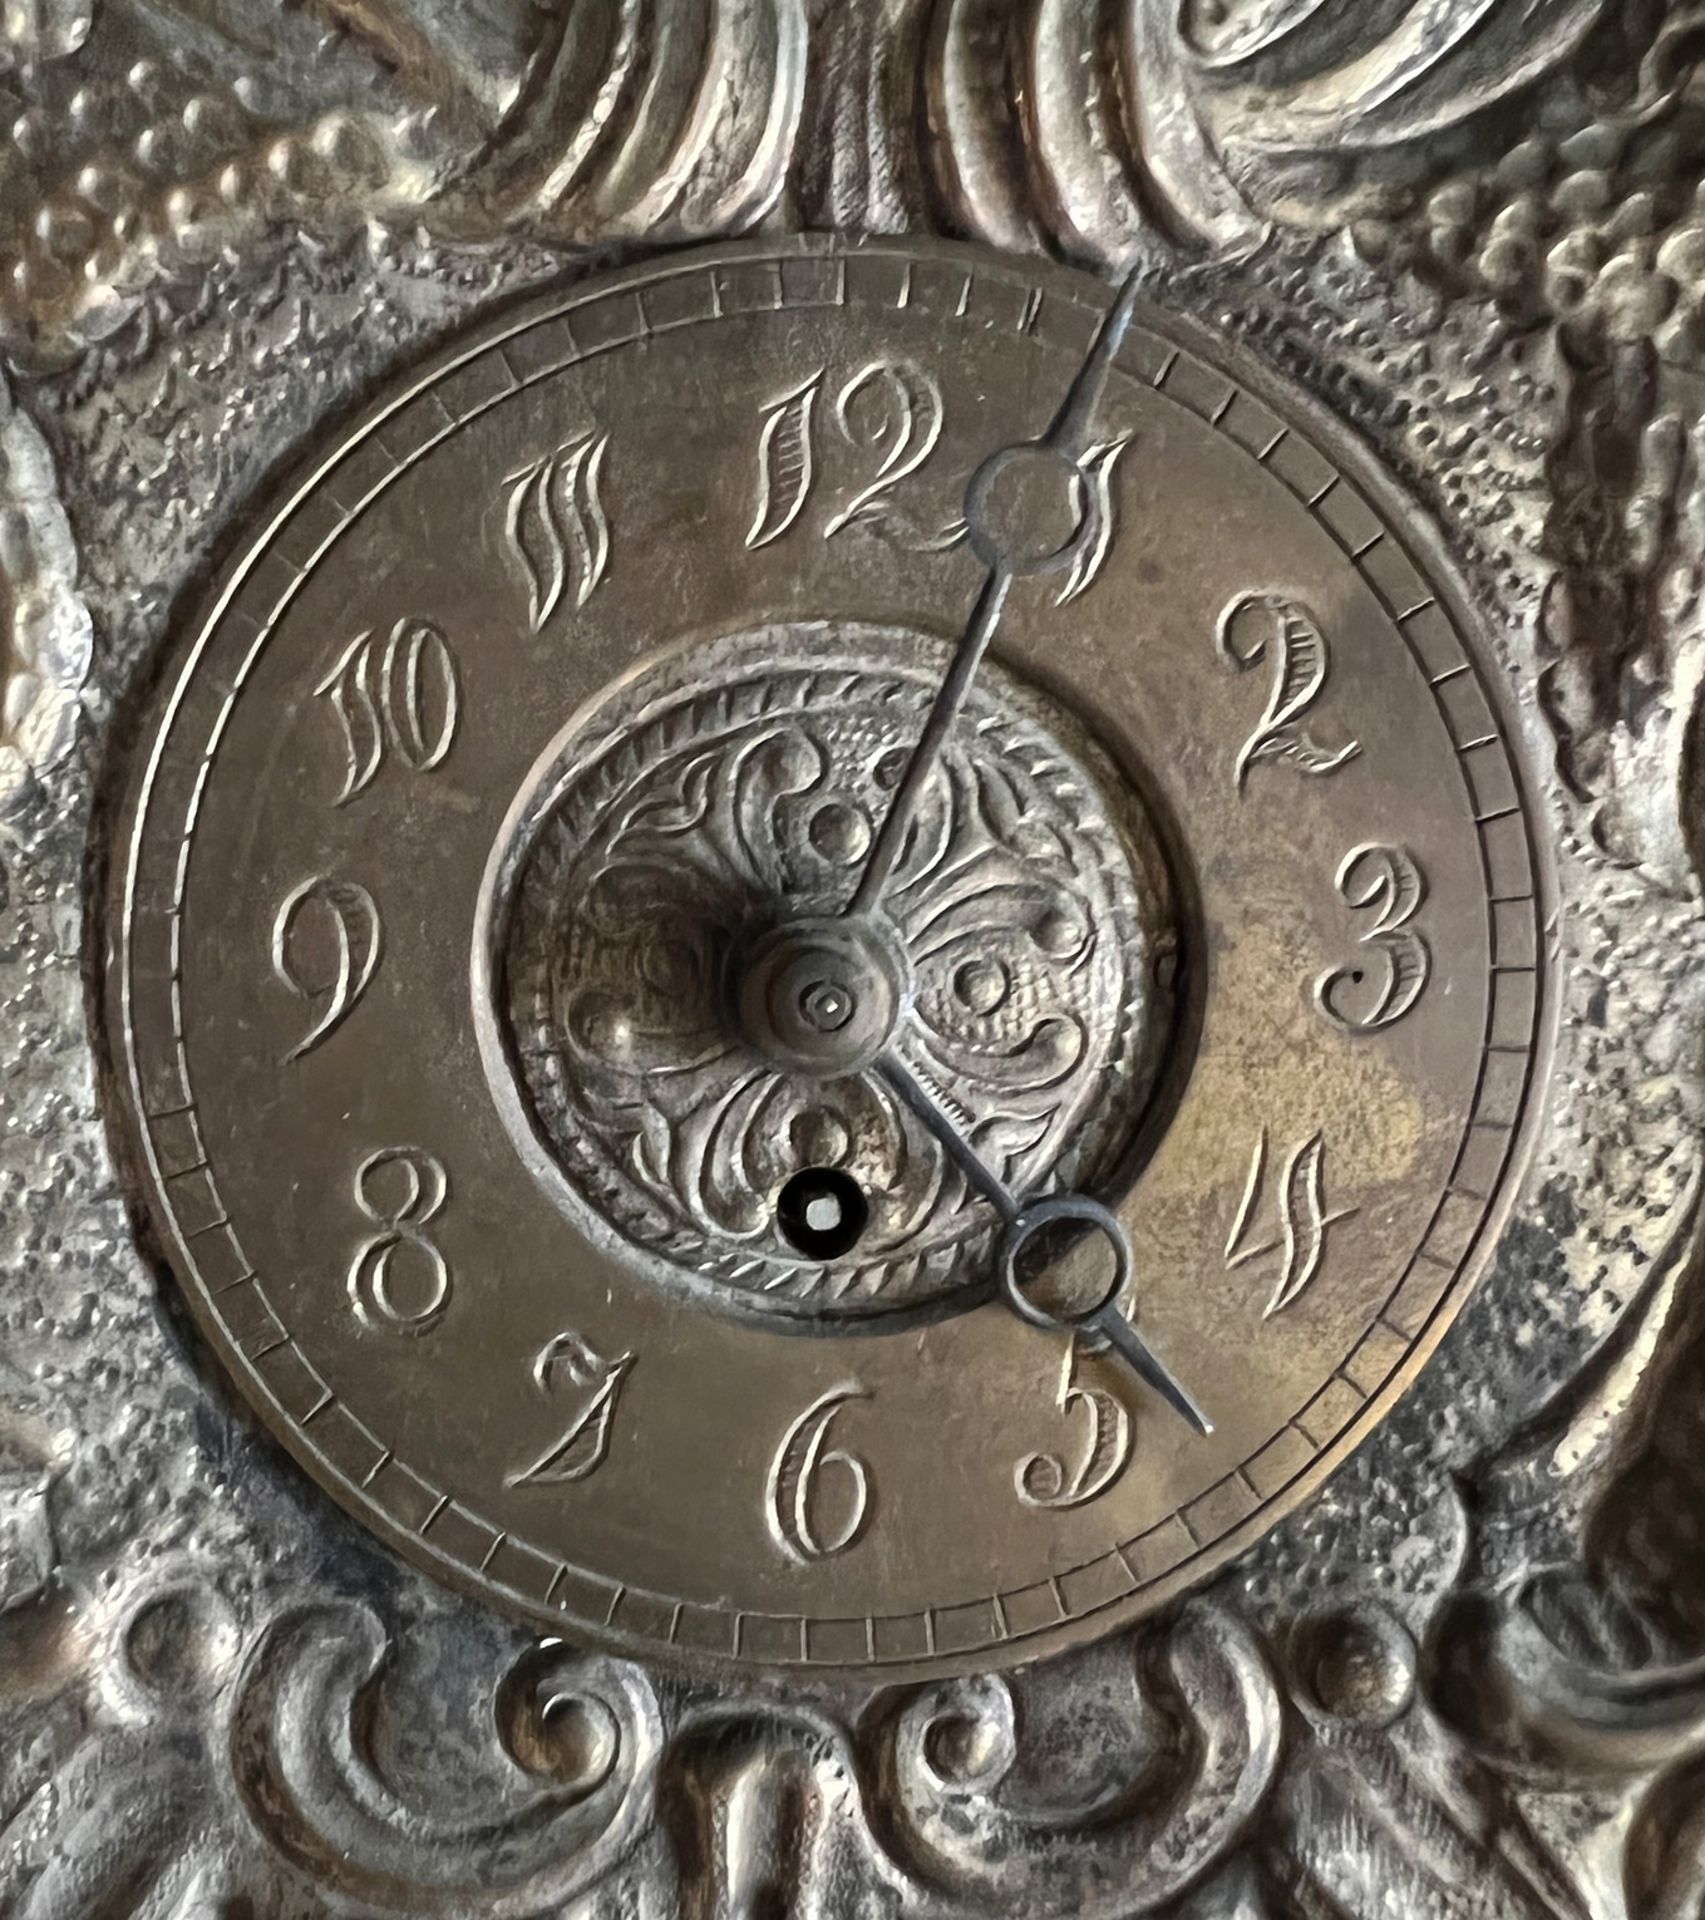 Kleine Uhr / Little clock. 19. Jh., Messingblech, getrieben, Uhr läuft an (Werk nicht geprüft), - Bild 2 aus 4